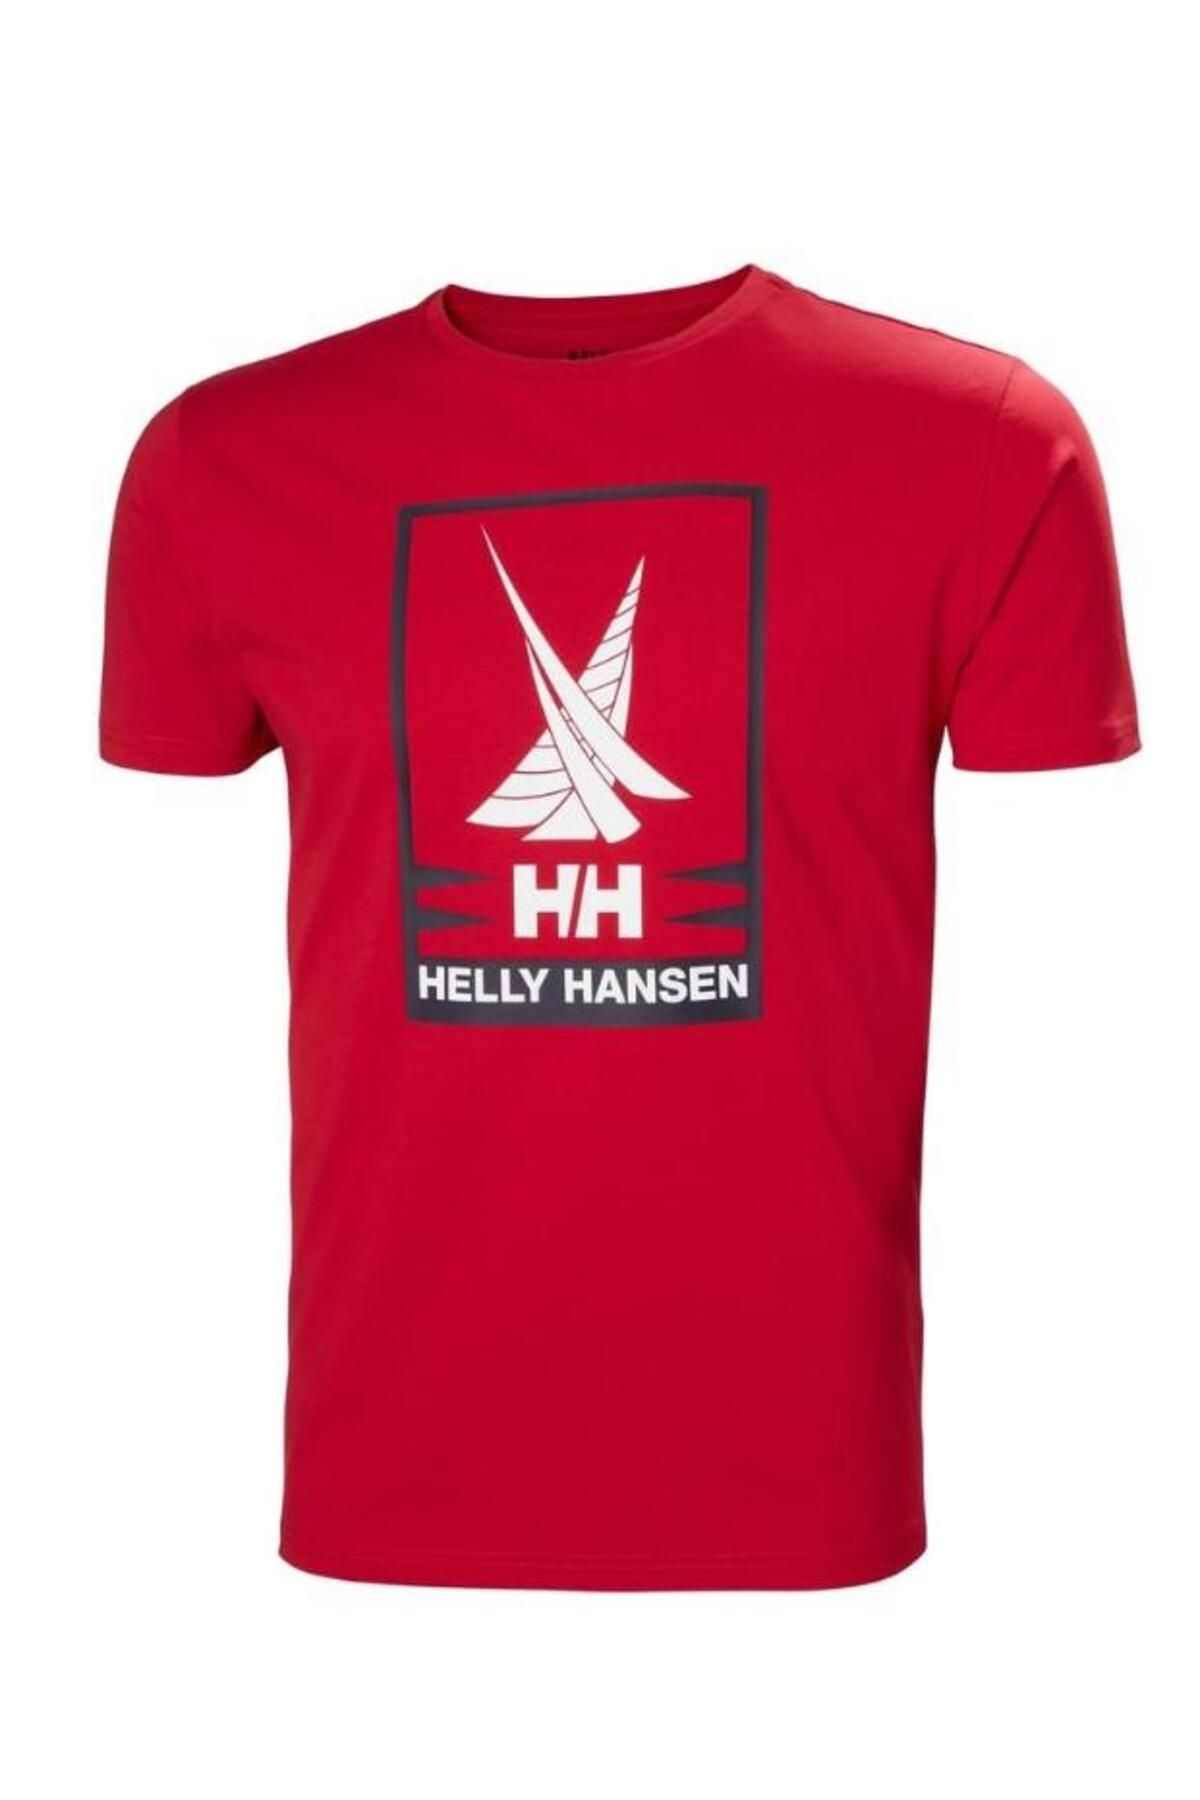 Helly Hansen SHORELINE T-SHIRT 2.0